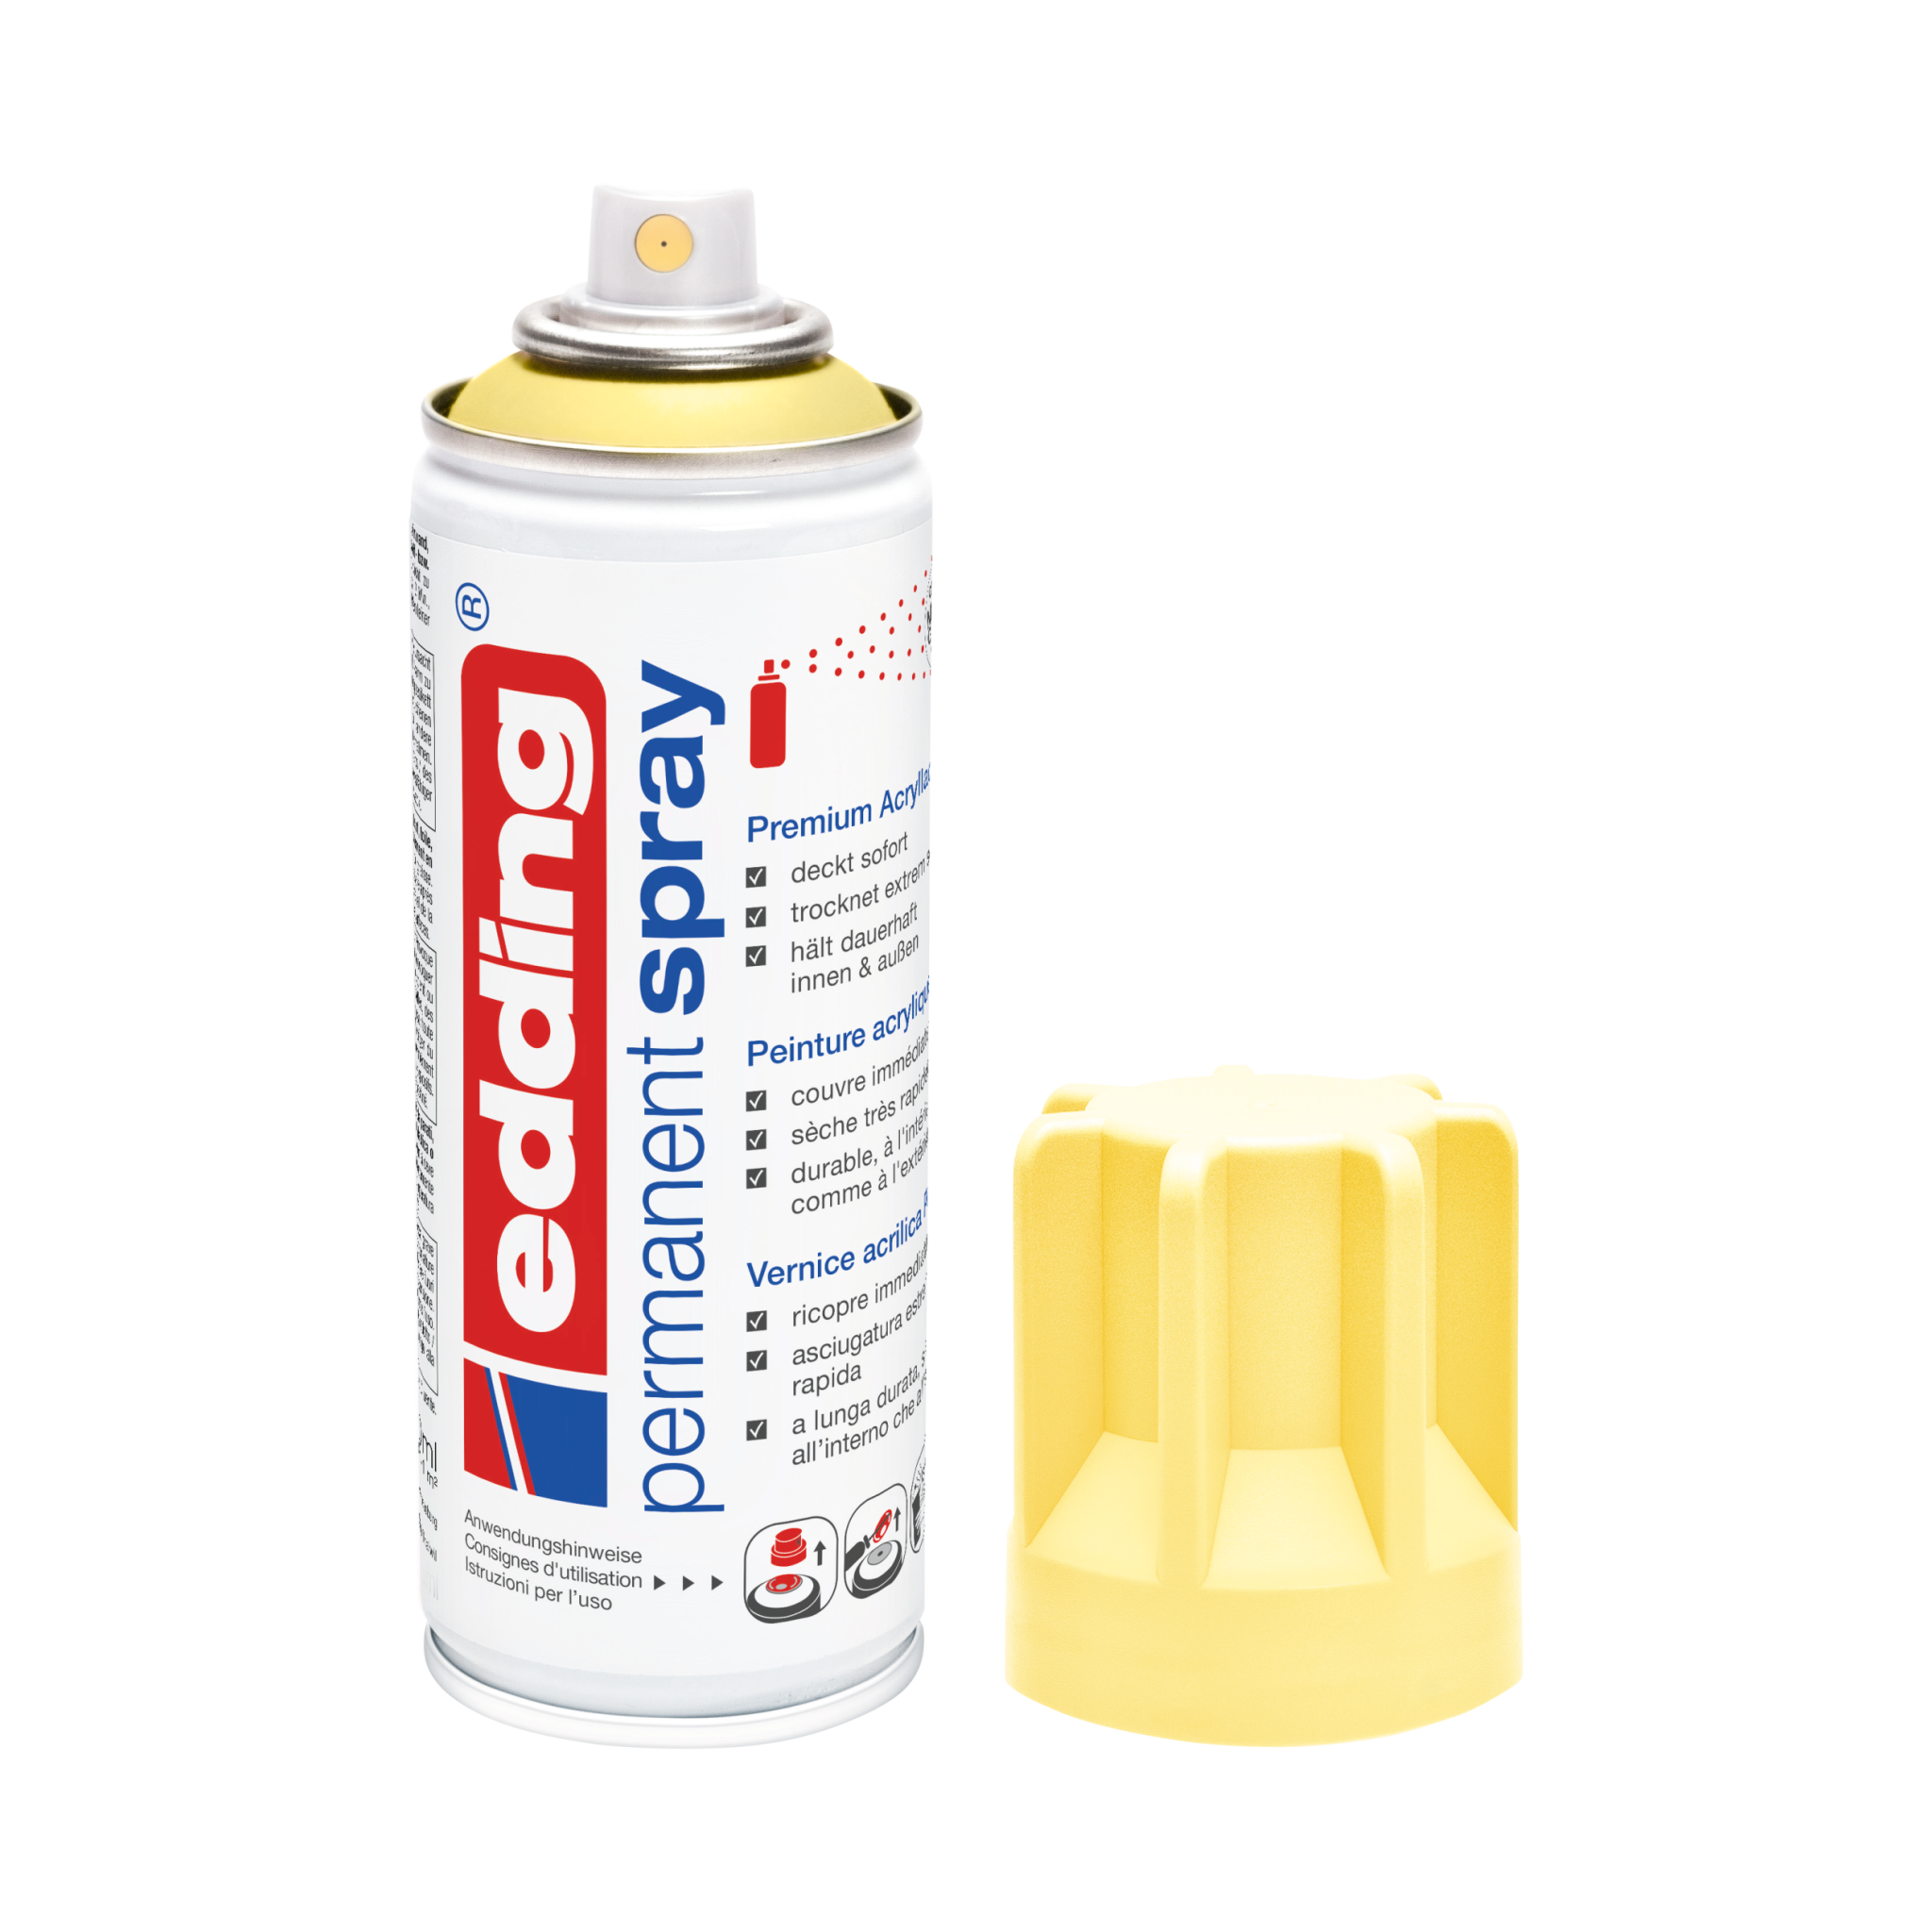 Daneben wurde eine Dose mit dem Permanentspray Acryllack edding 5200 der Marke Edding in der Farbe Pastellweiß platziert, deren gelbe Kunststoffkappe abgenommen wurde.